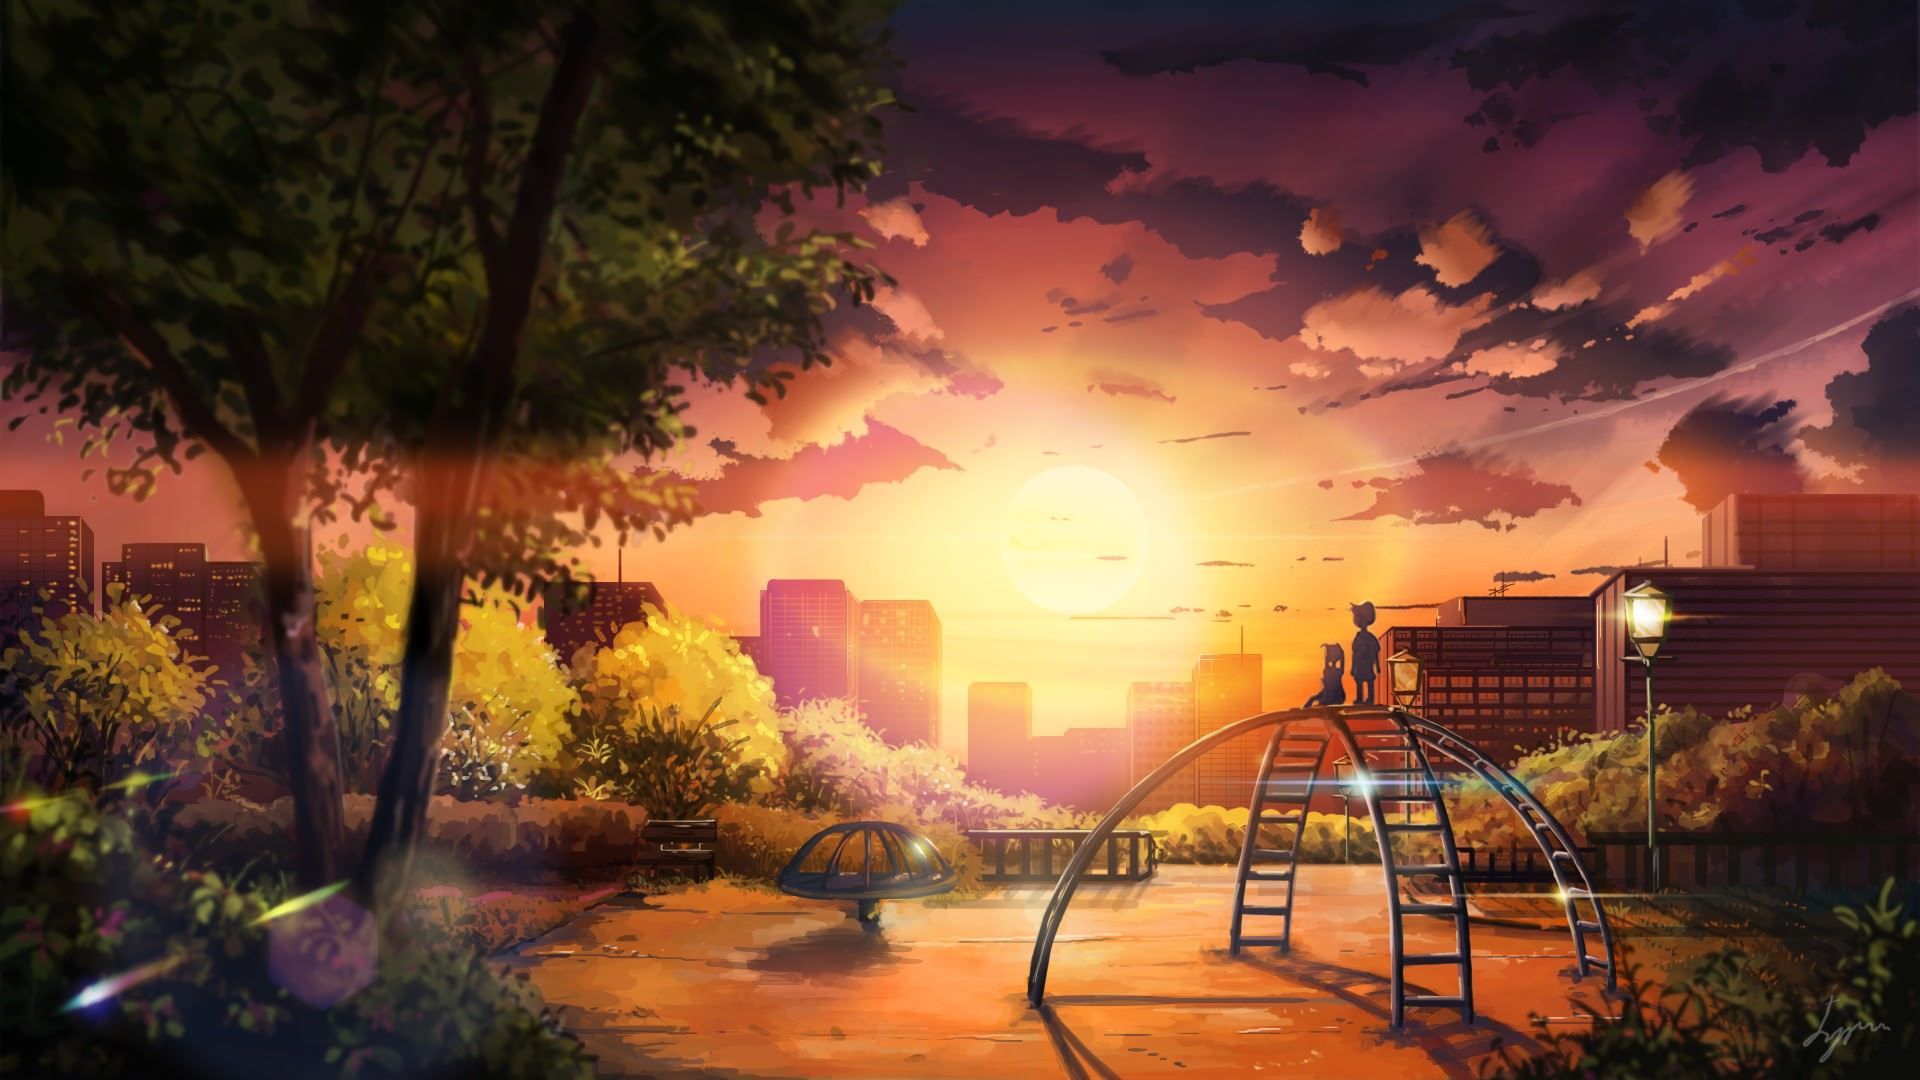 Hình nền anime khu vực công viên: Với những ai yêu thích anime, hình nền khu vực công viên này sẽ là một món quà tuyệt vời. Hãy để màn hình của bạn bừng sáng với những tông màu nước sơn anime tuyệt đẹp và cùng điểm qua những tác phẩm tuyệt vời trong anime.